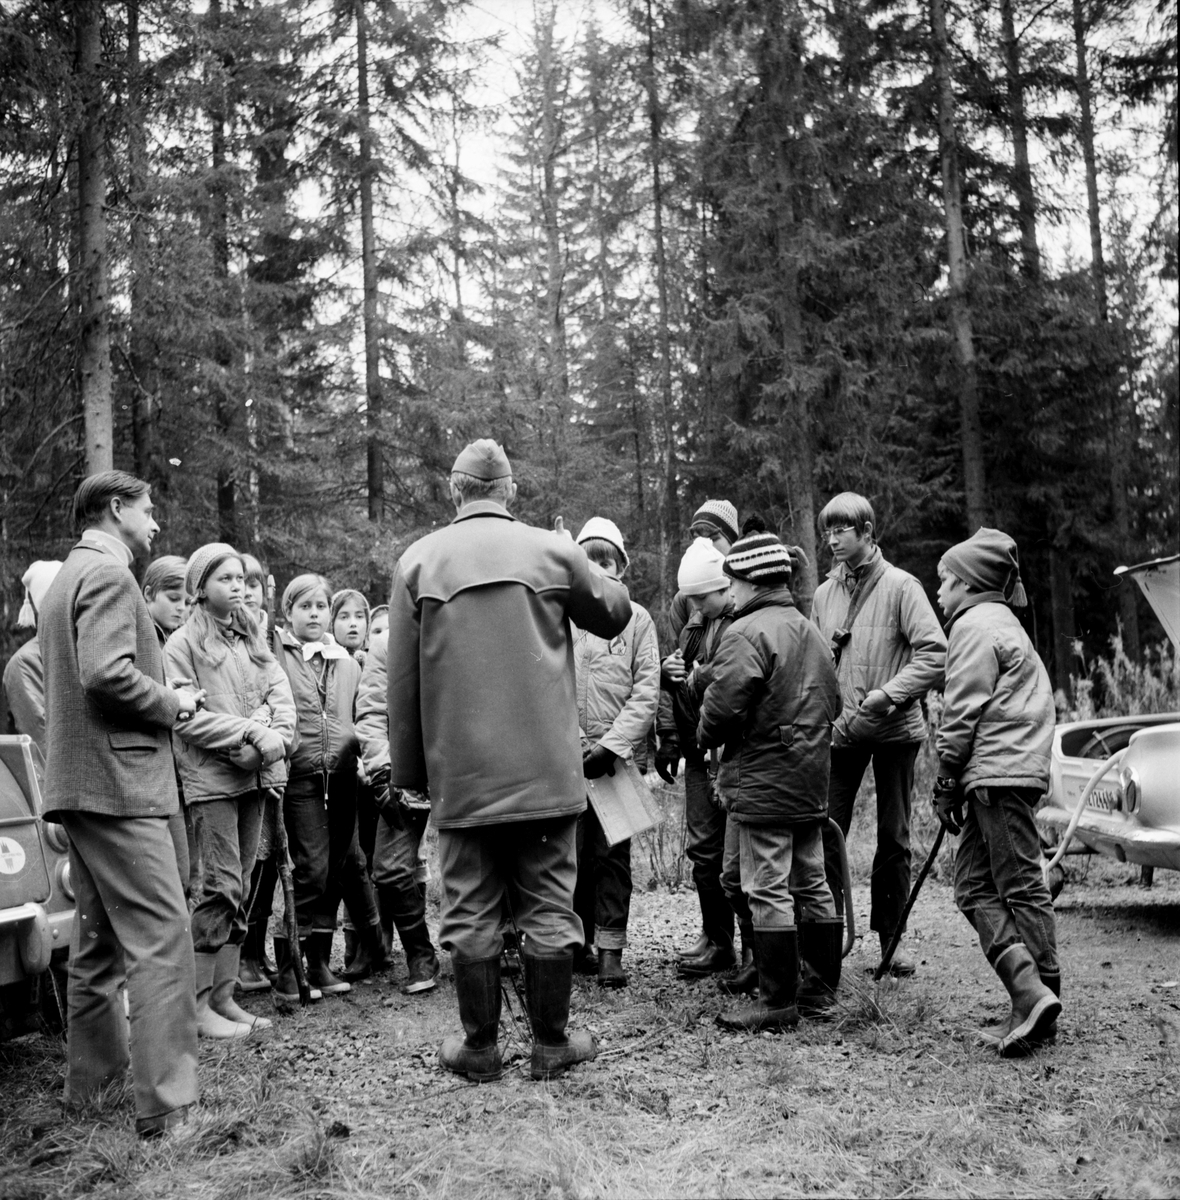 Arbrå,
Scouterna på väg till Söroms,
Okt. 1969